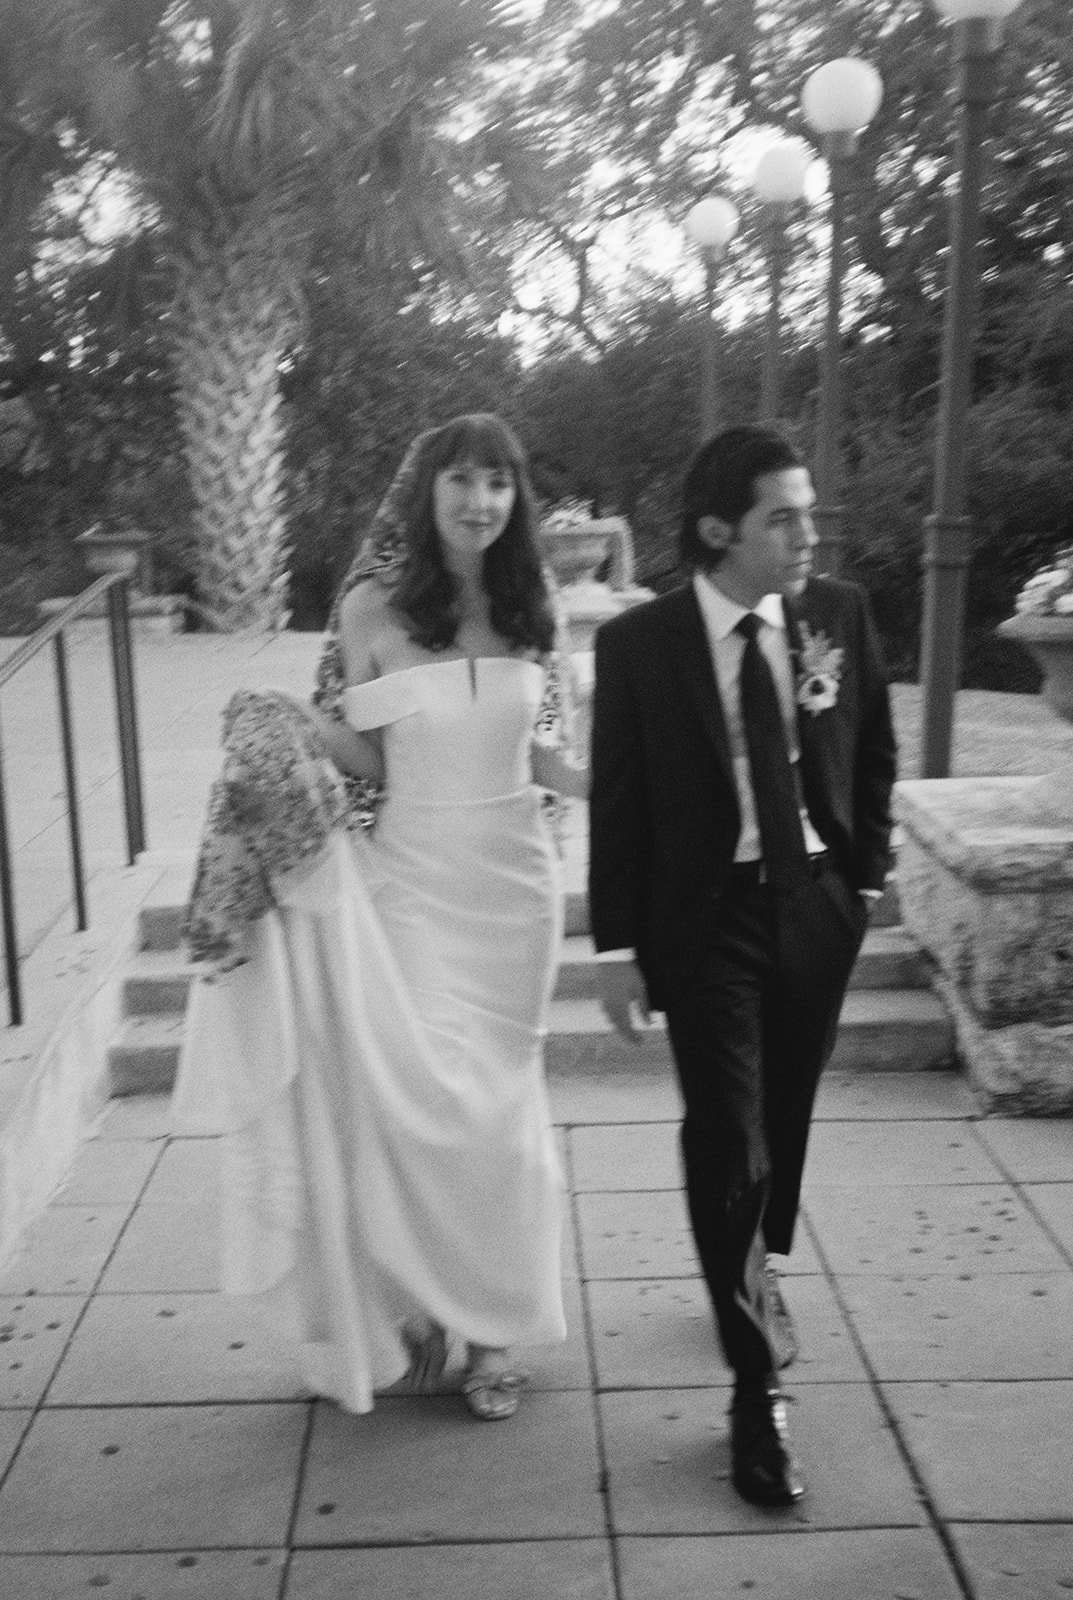 Best-Austin-Wedding-Photographers-Elopement-Film-35mm-Asheville-Santa-Barbara-Laguna-Gloria-66.jpg